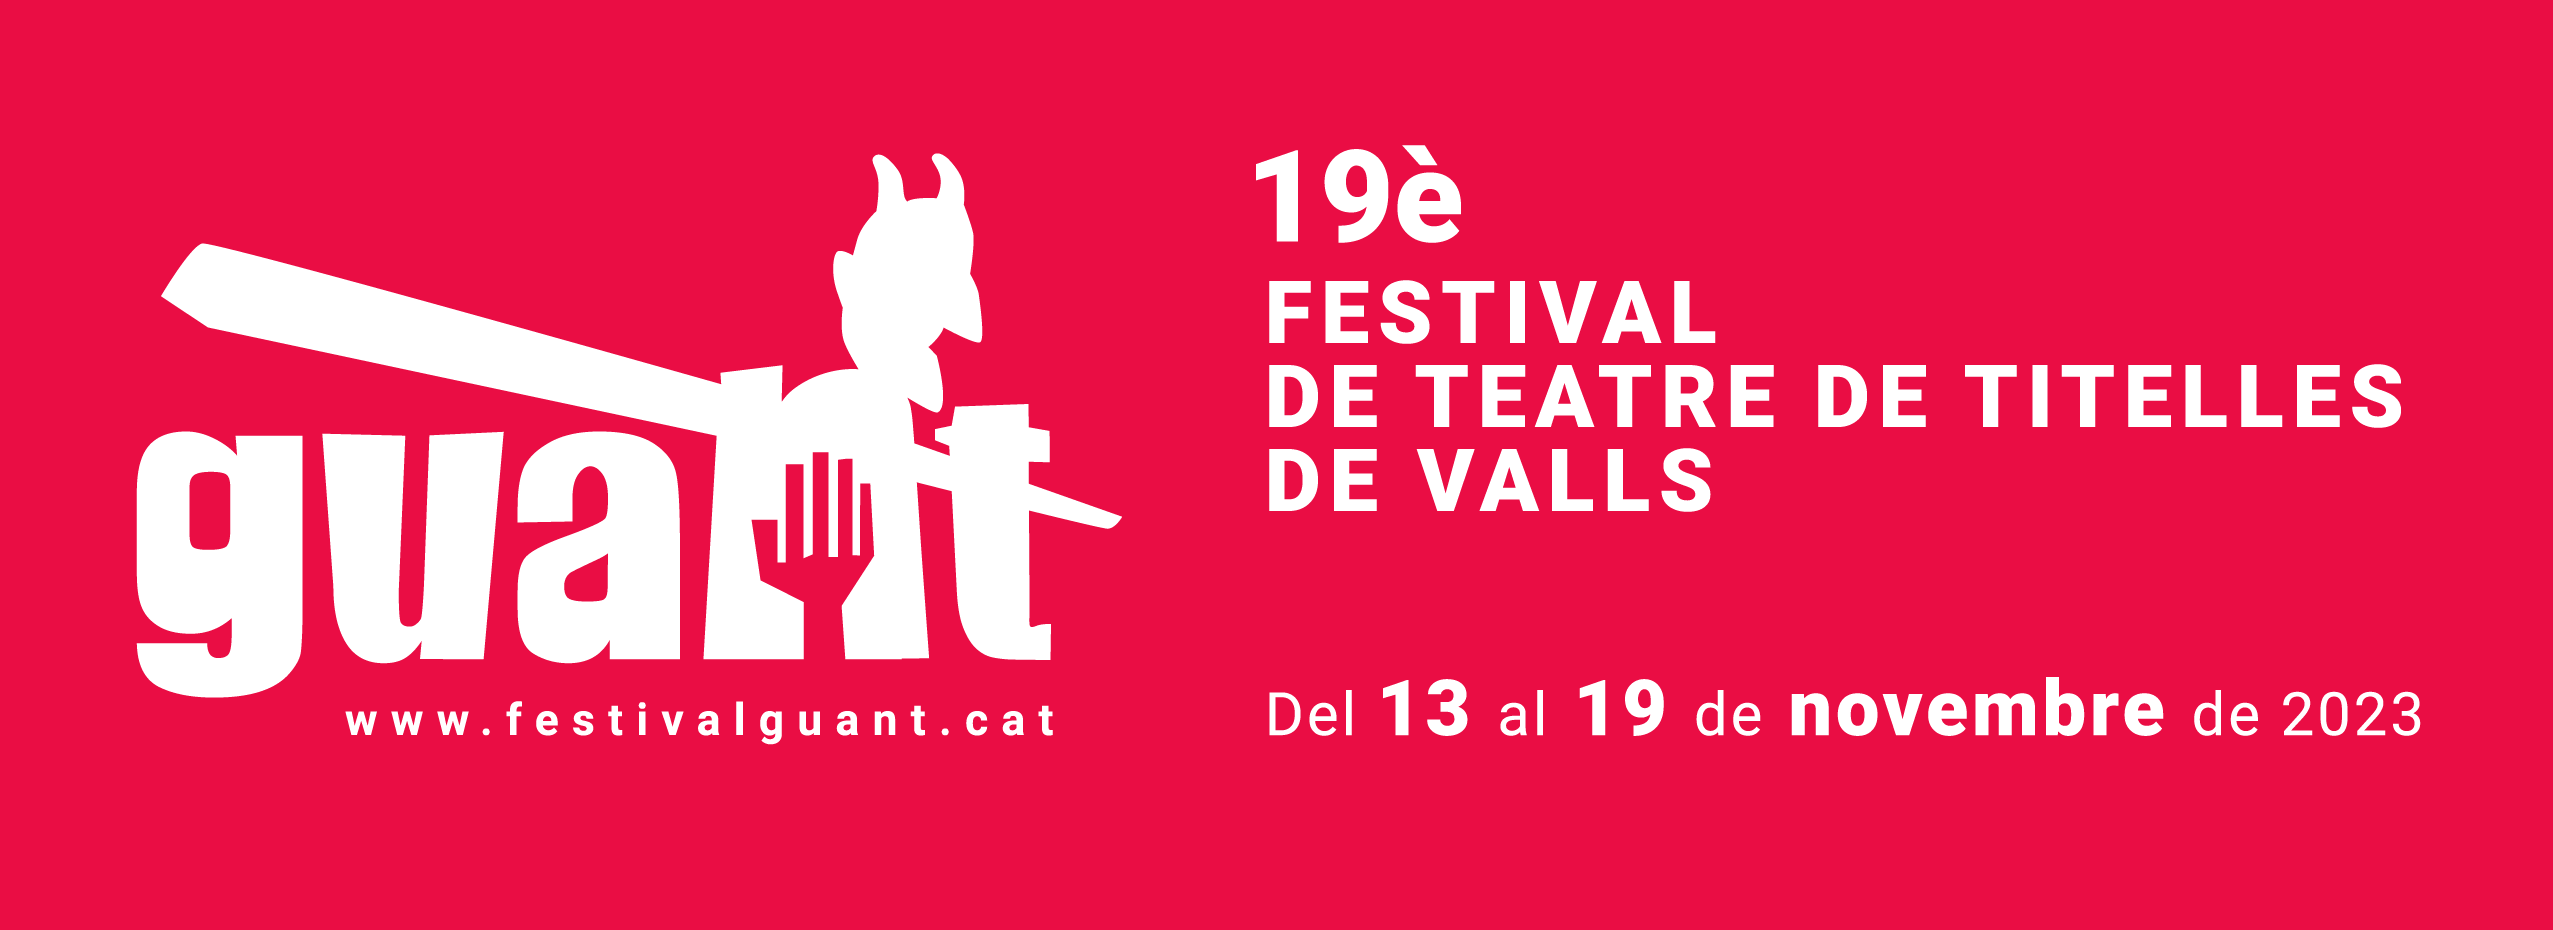 19è Festival internacional de teatre de titelles de Valls | Els aparadors titellaires